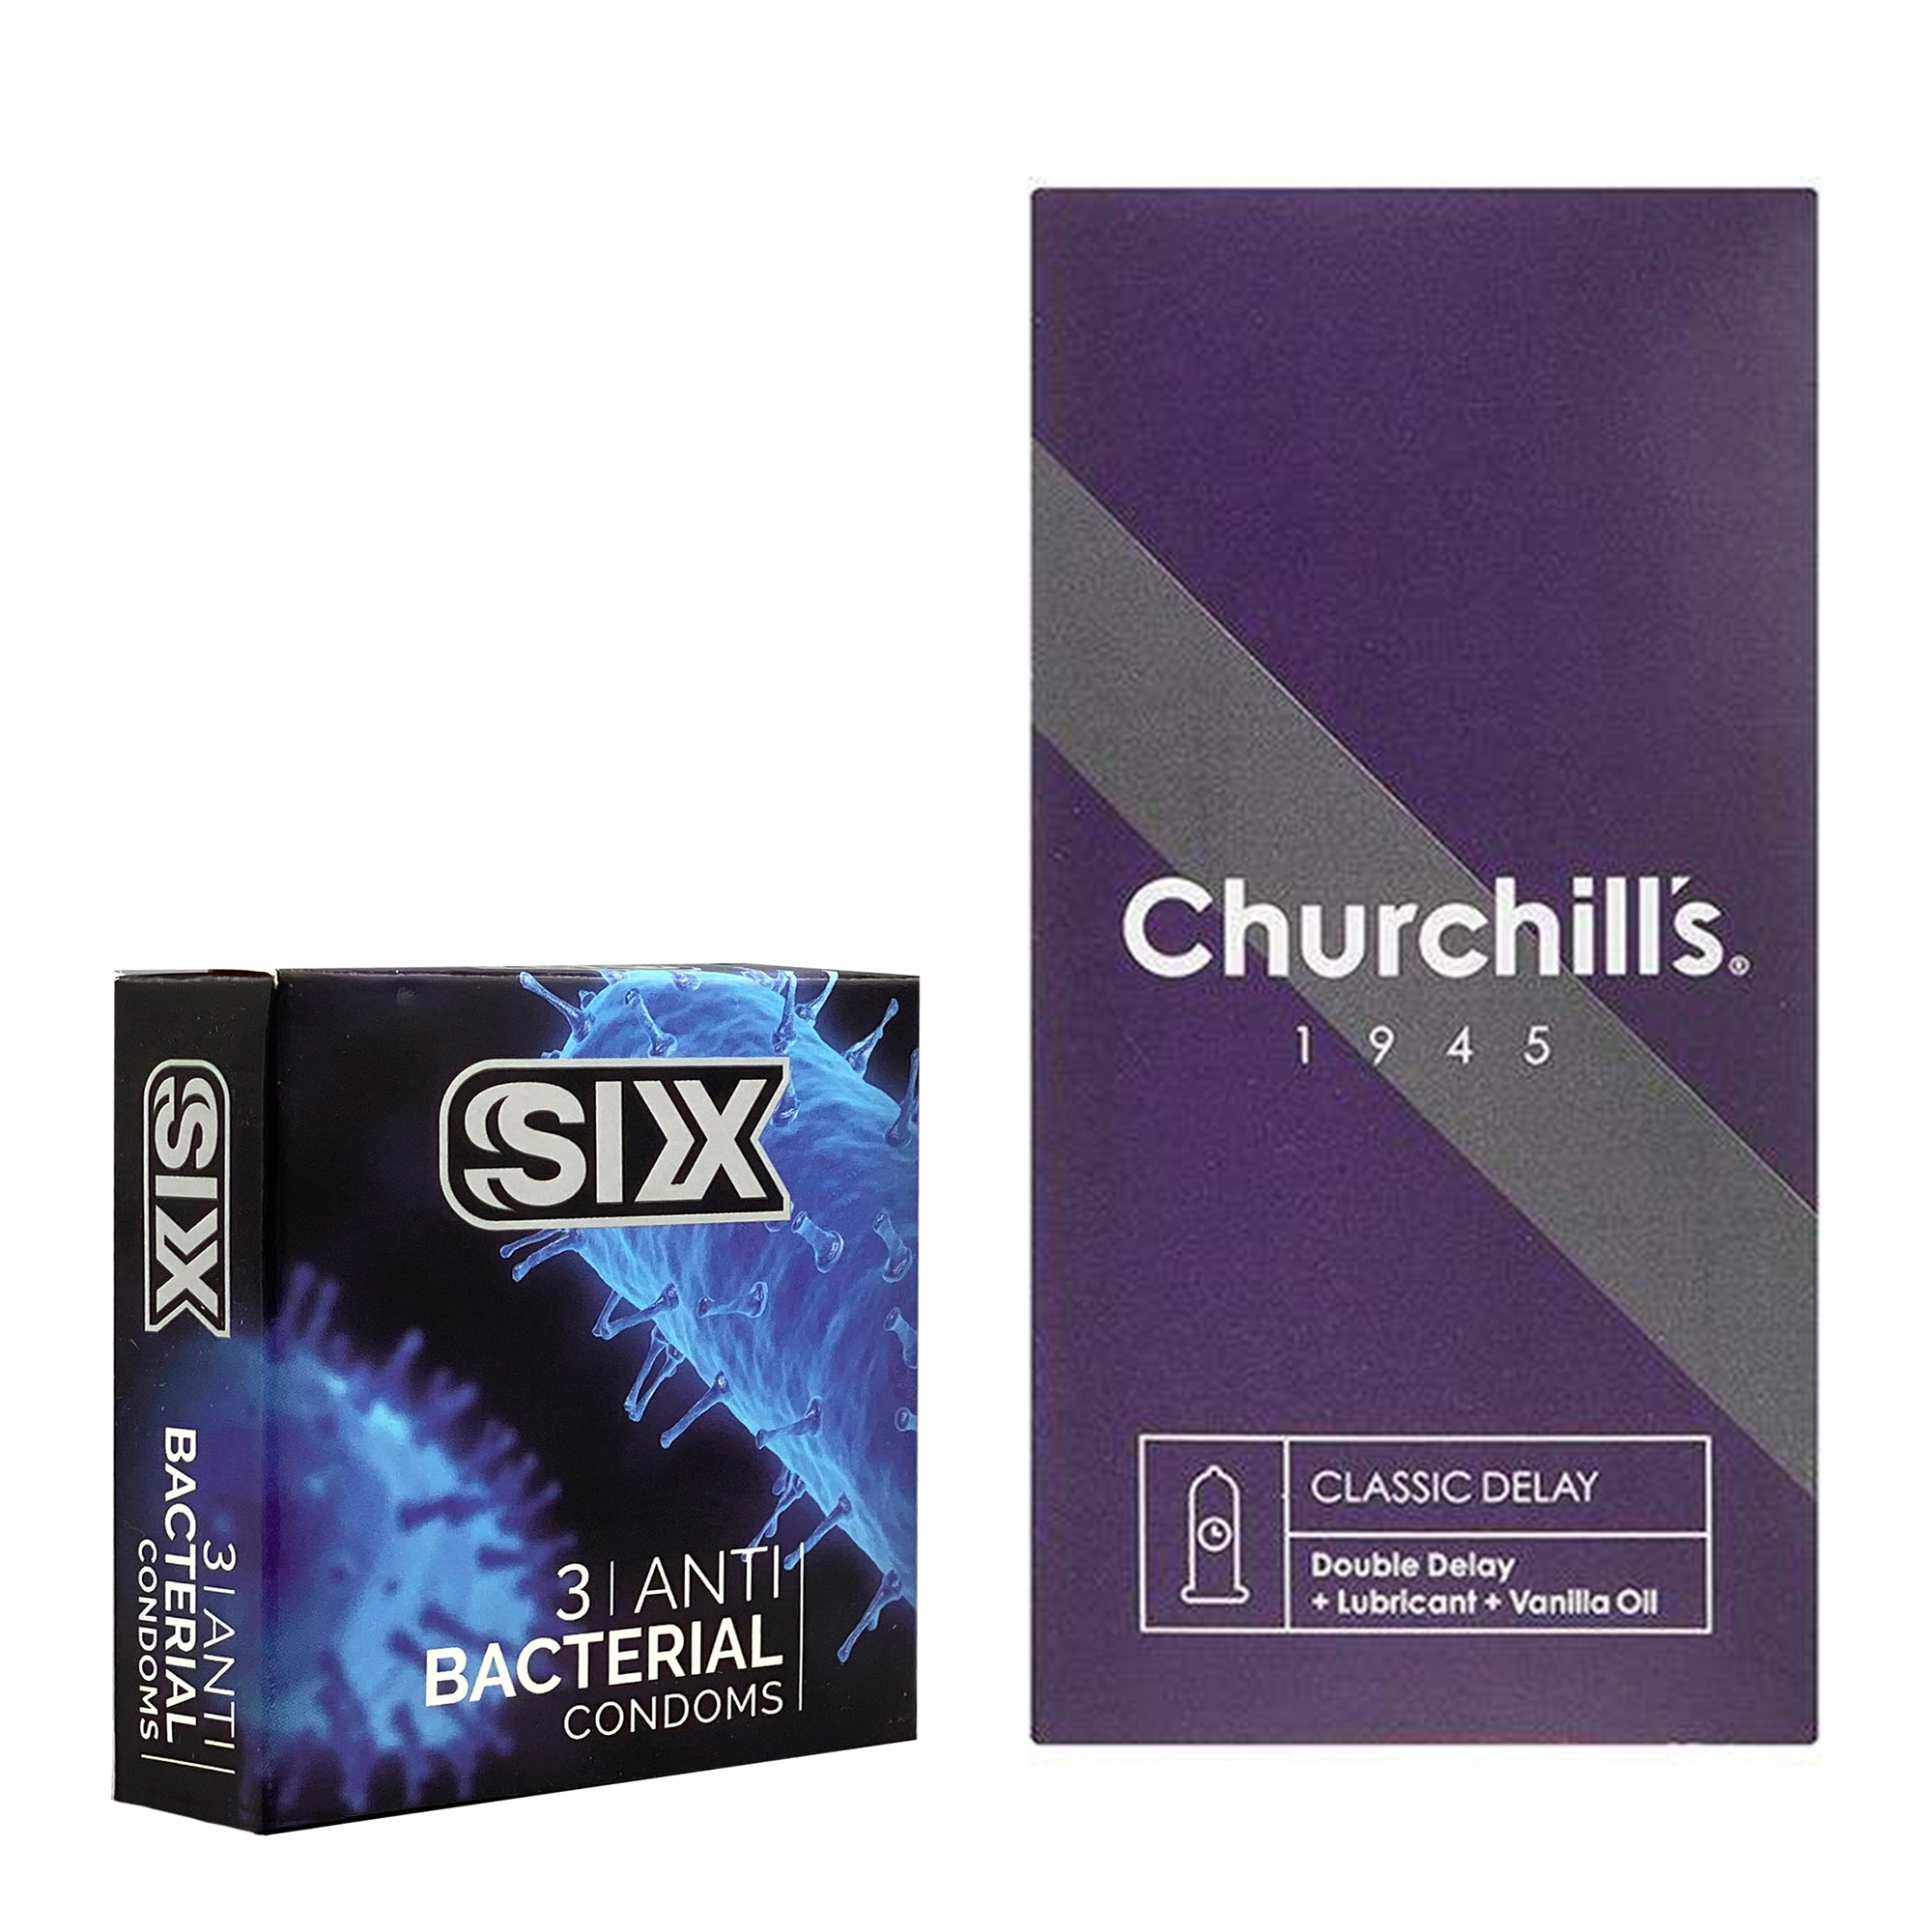 کاندوم چرچیلز مدل Classic Delay بسته 12 عددی به همراه کاندوم سیکس مدل آنتی باکتریال بسته 3 عددی 